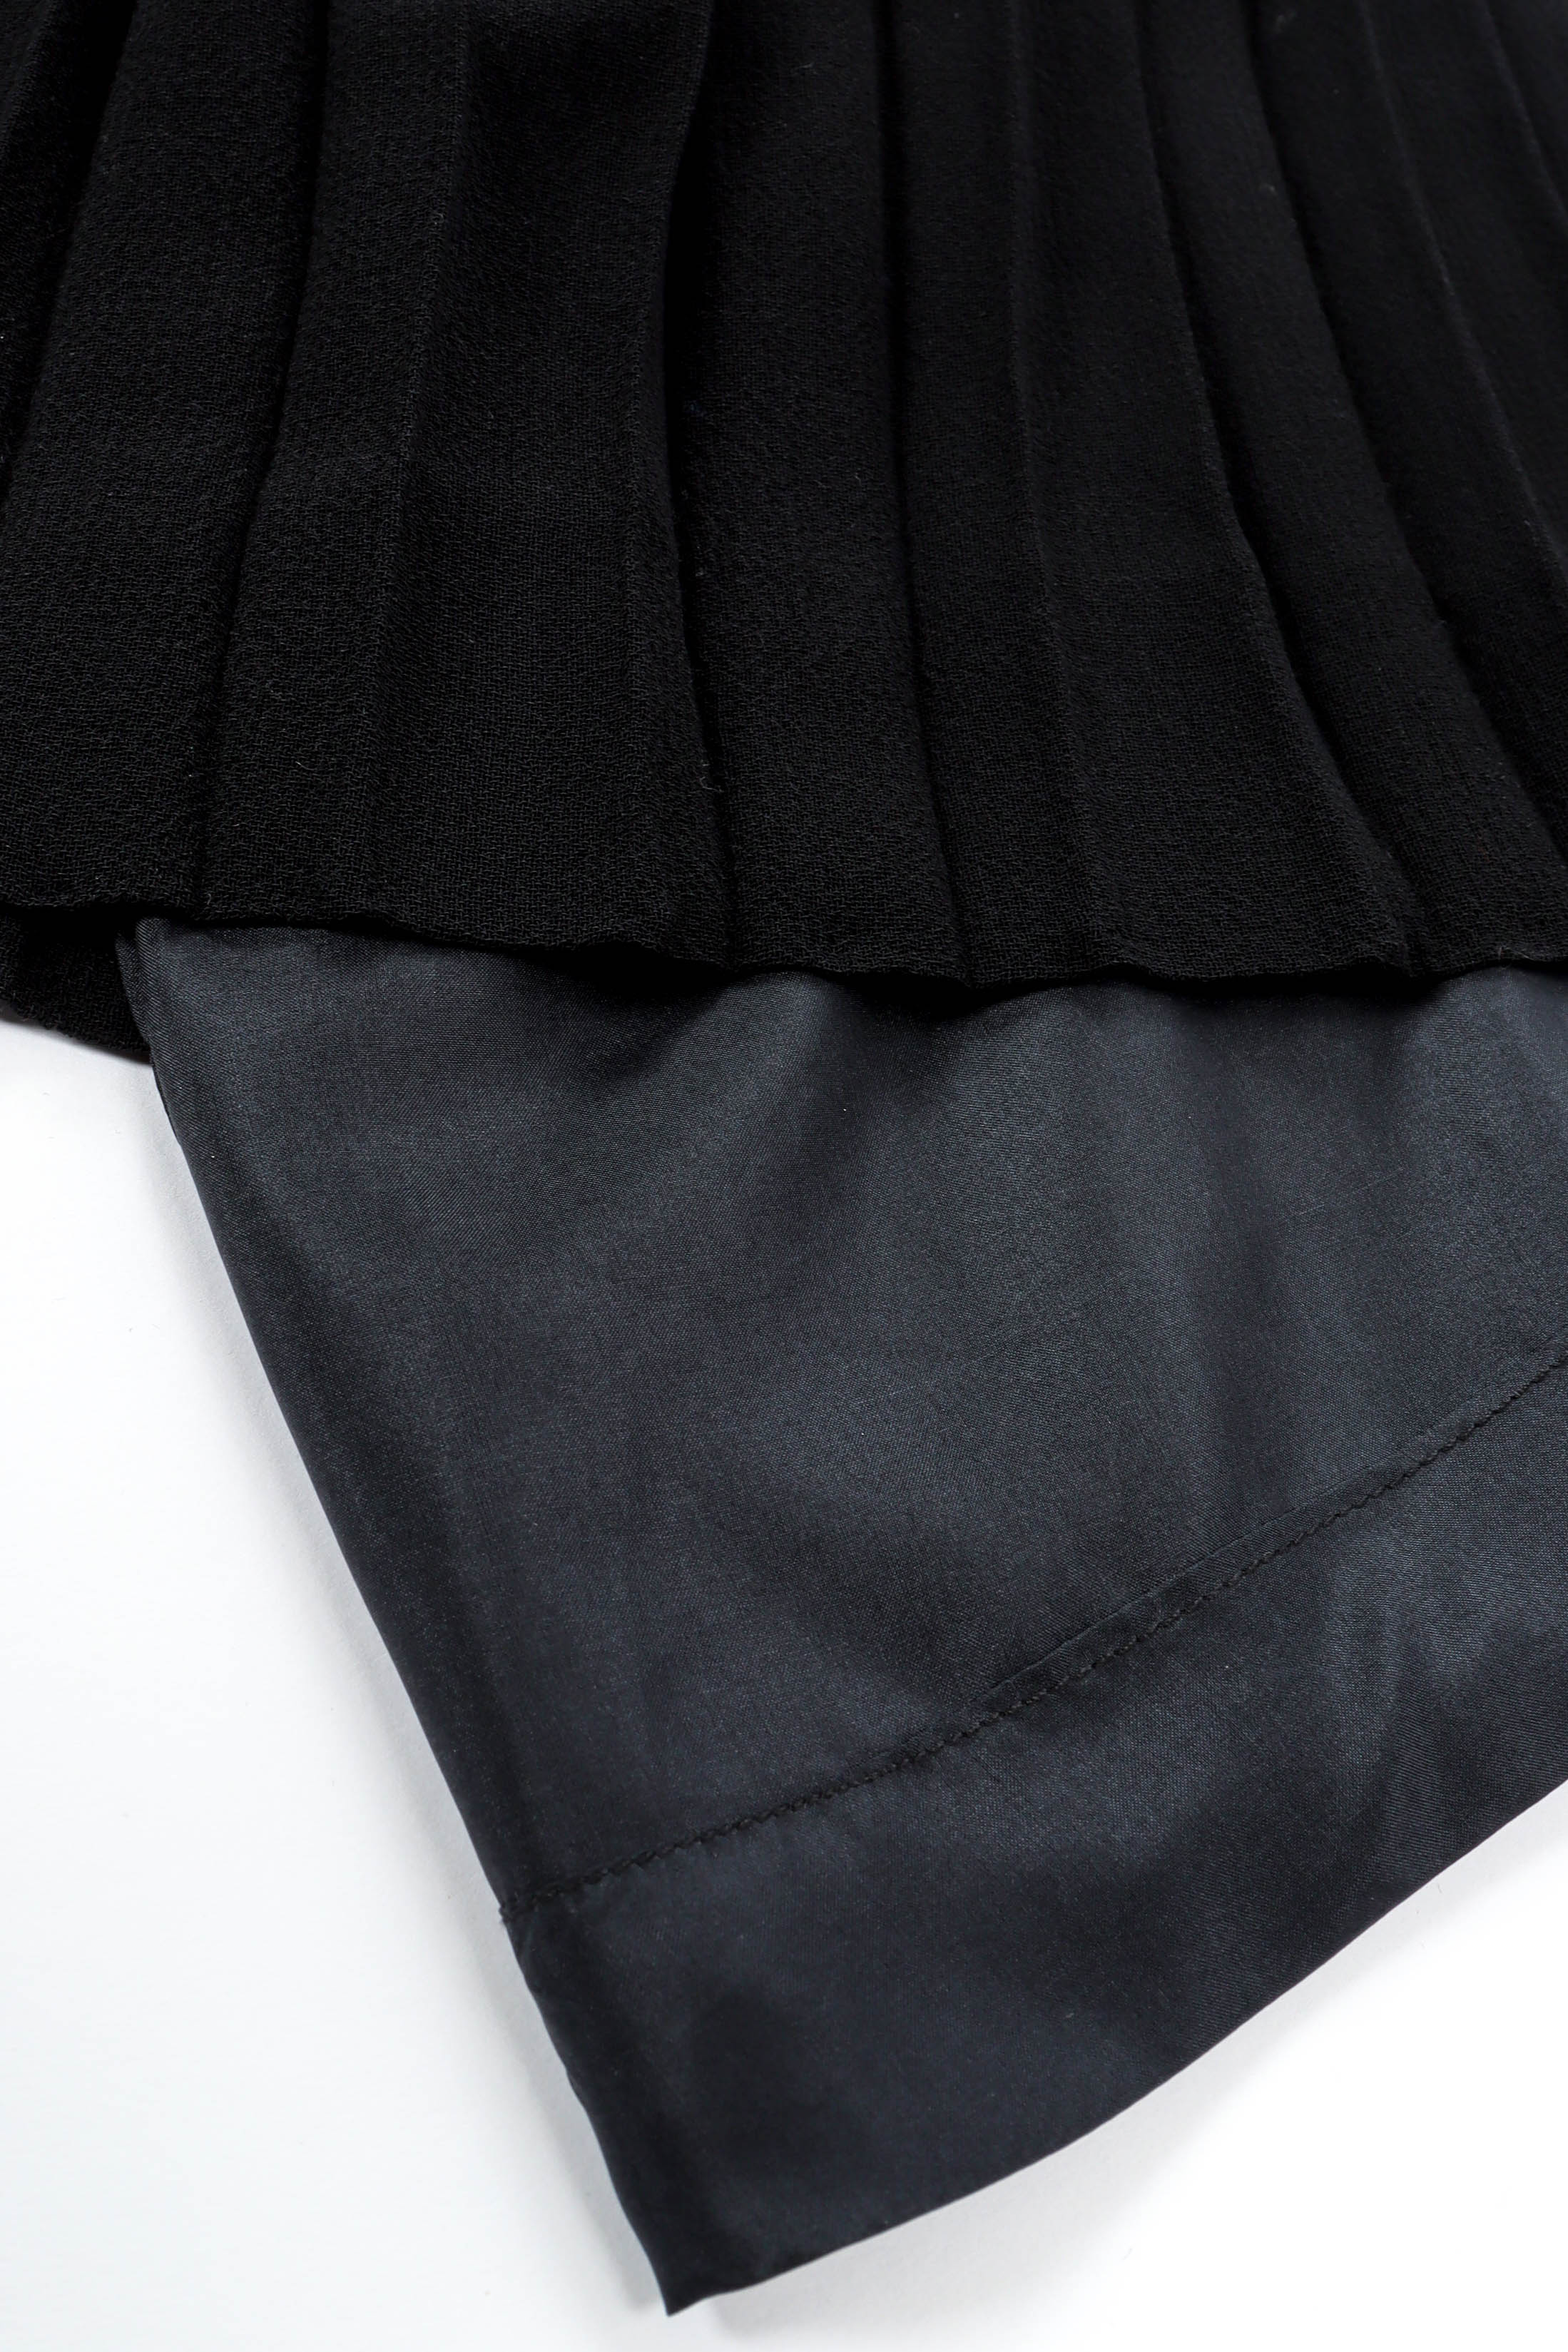 Vintage Chanel CC Pleated Wrap Dress liner/pleat detail @ Recess LA